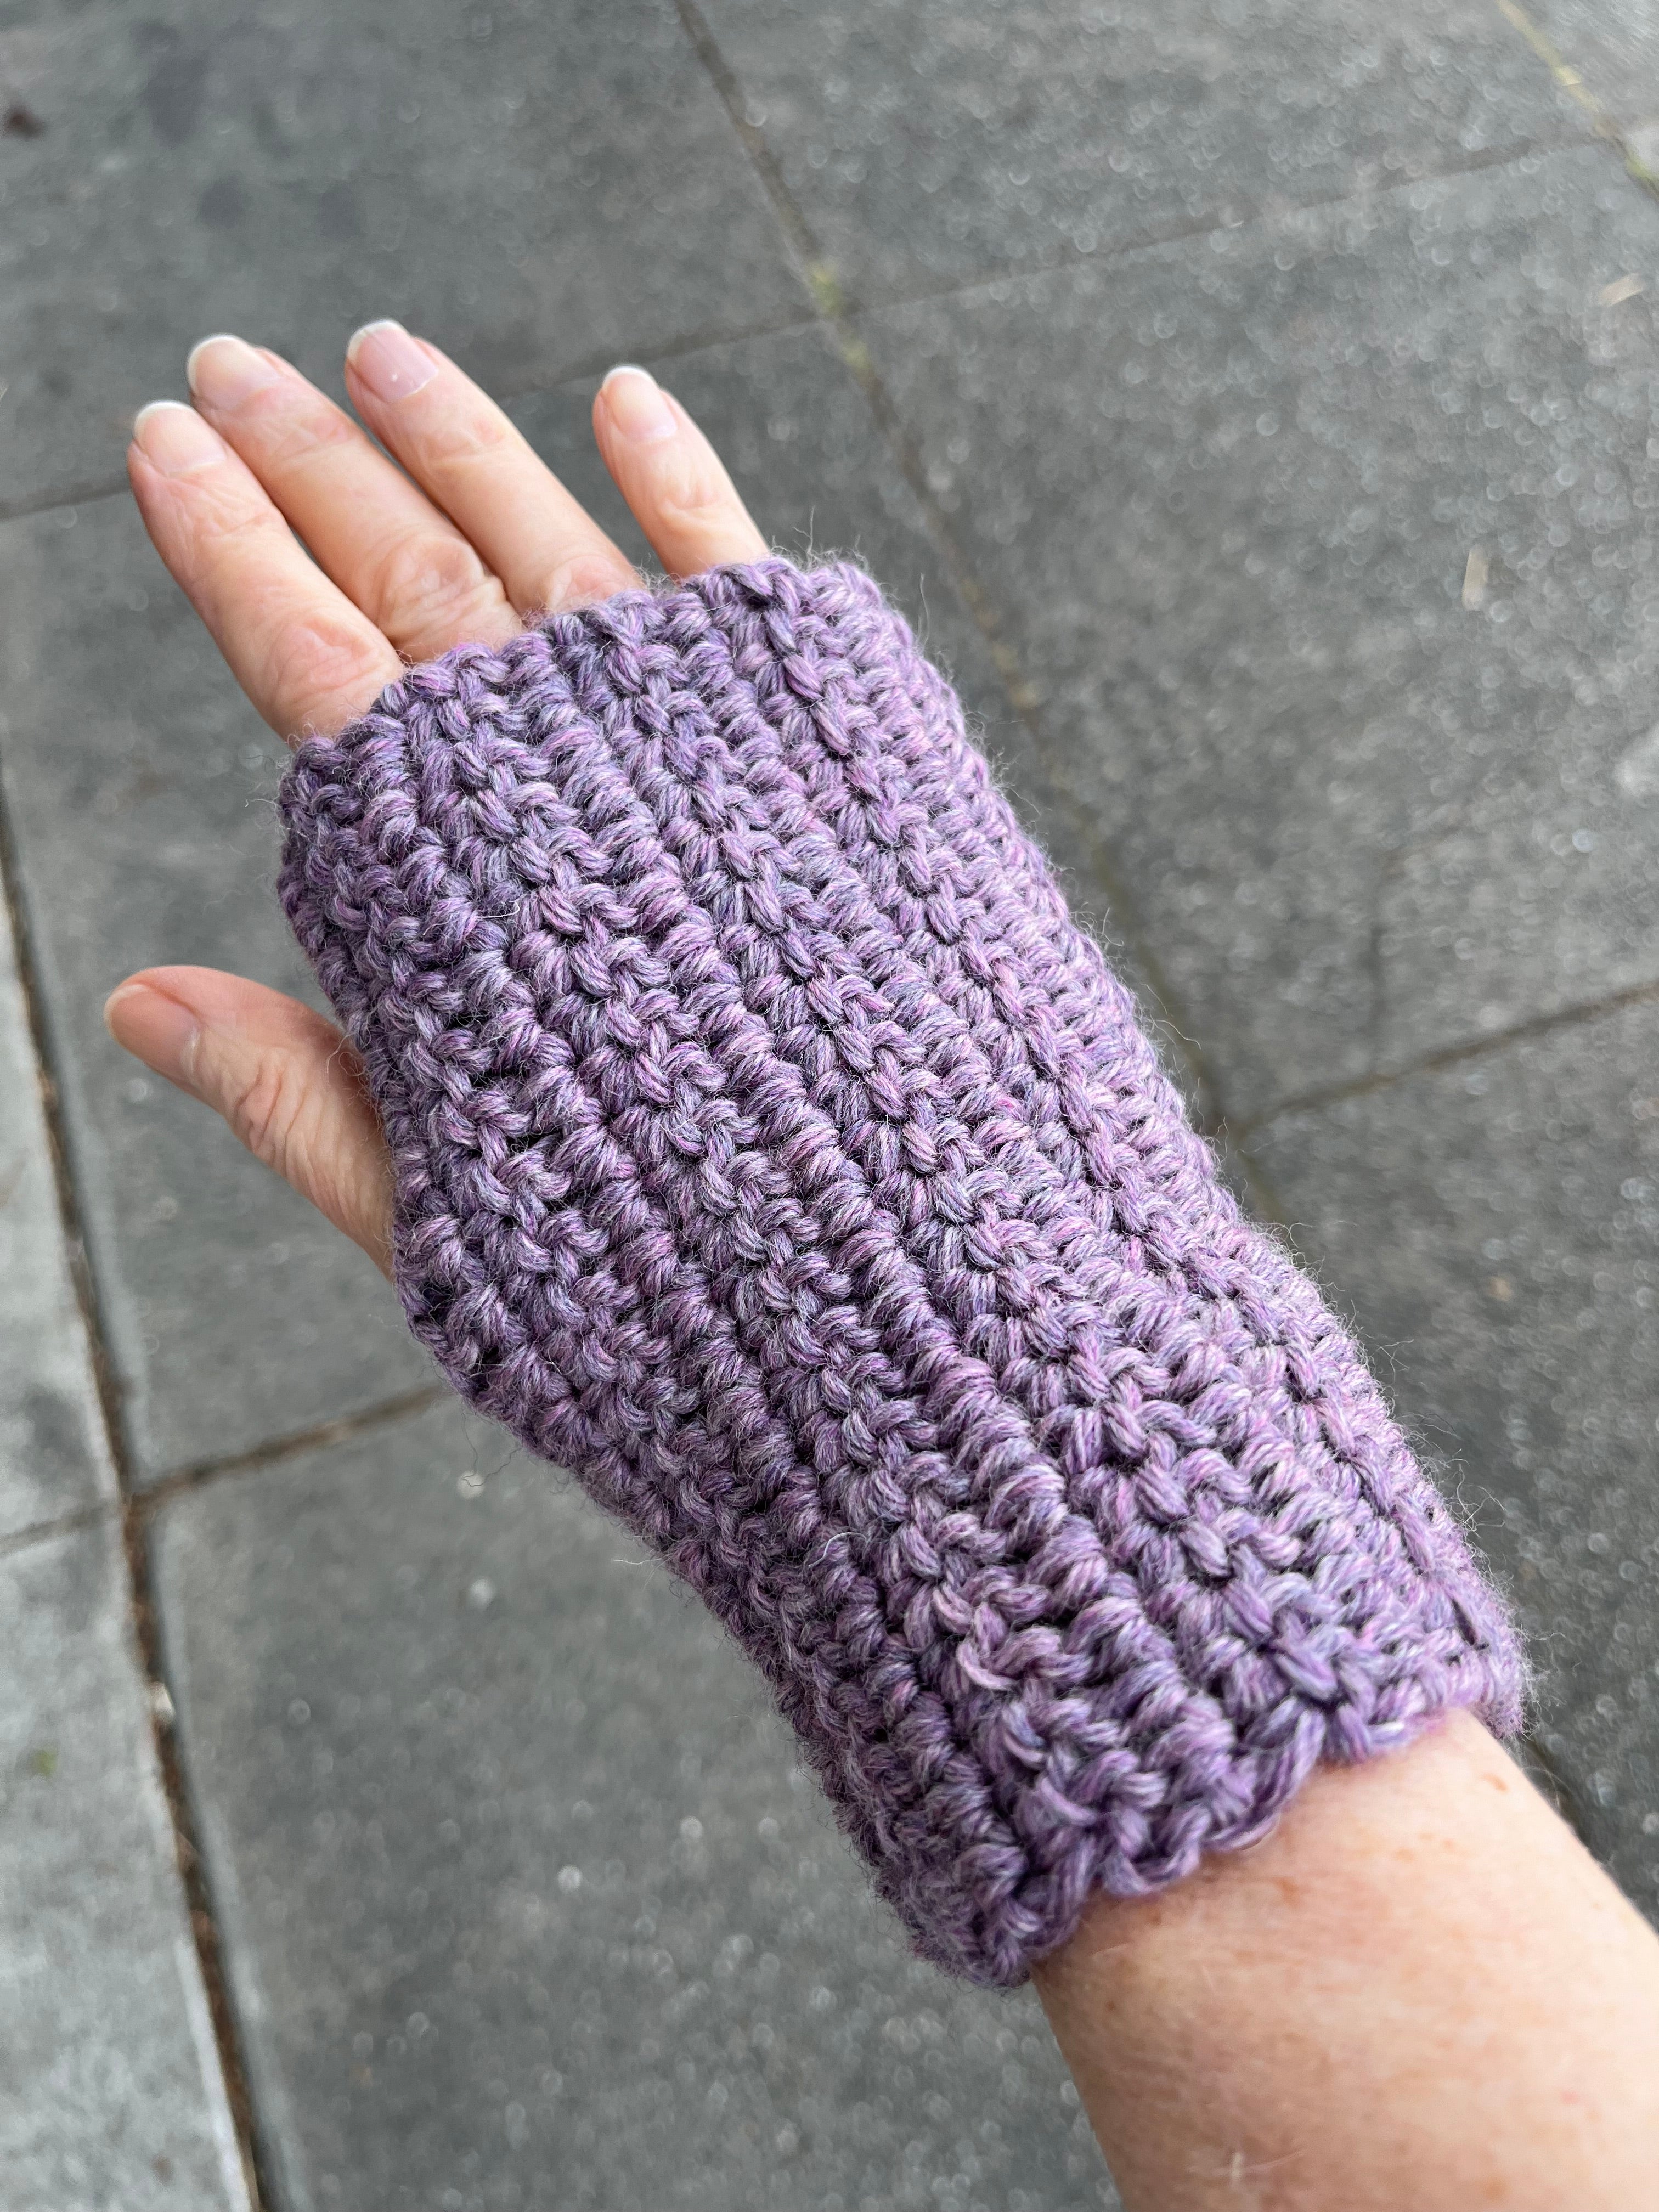 Learn to Crochet for Beginners - Fingerless Gloves